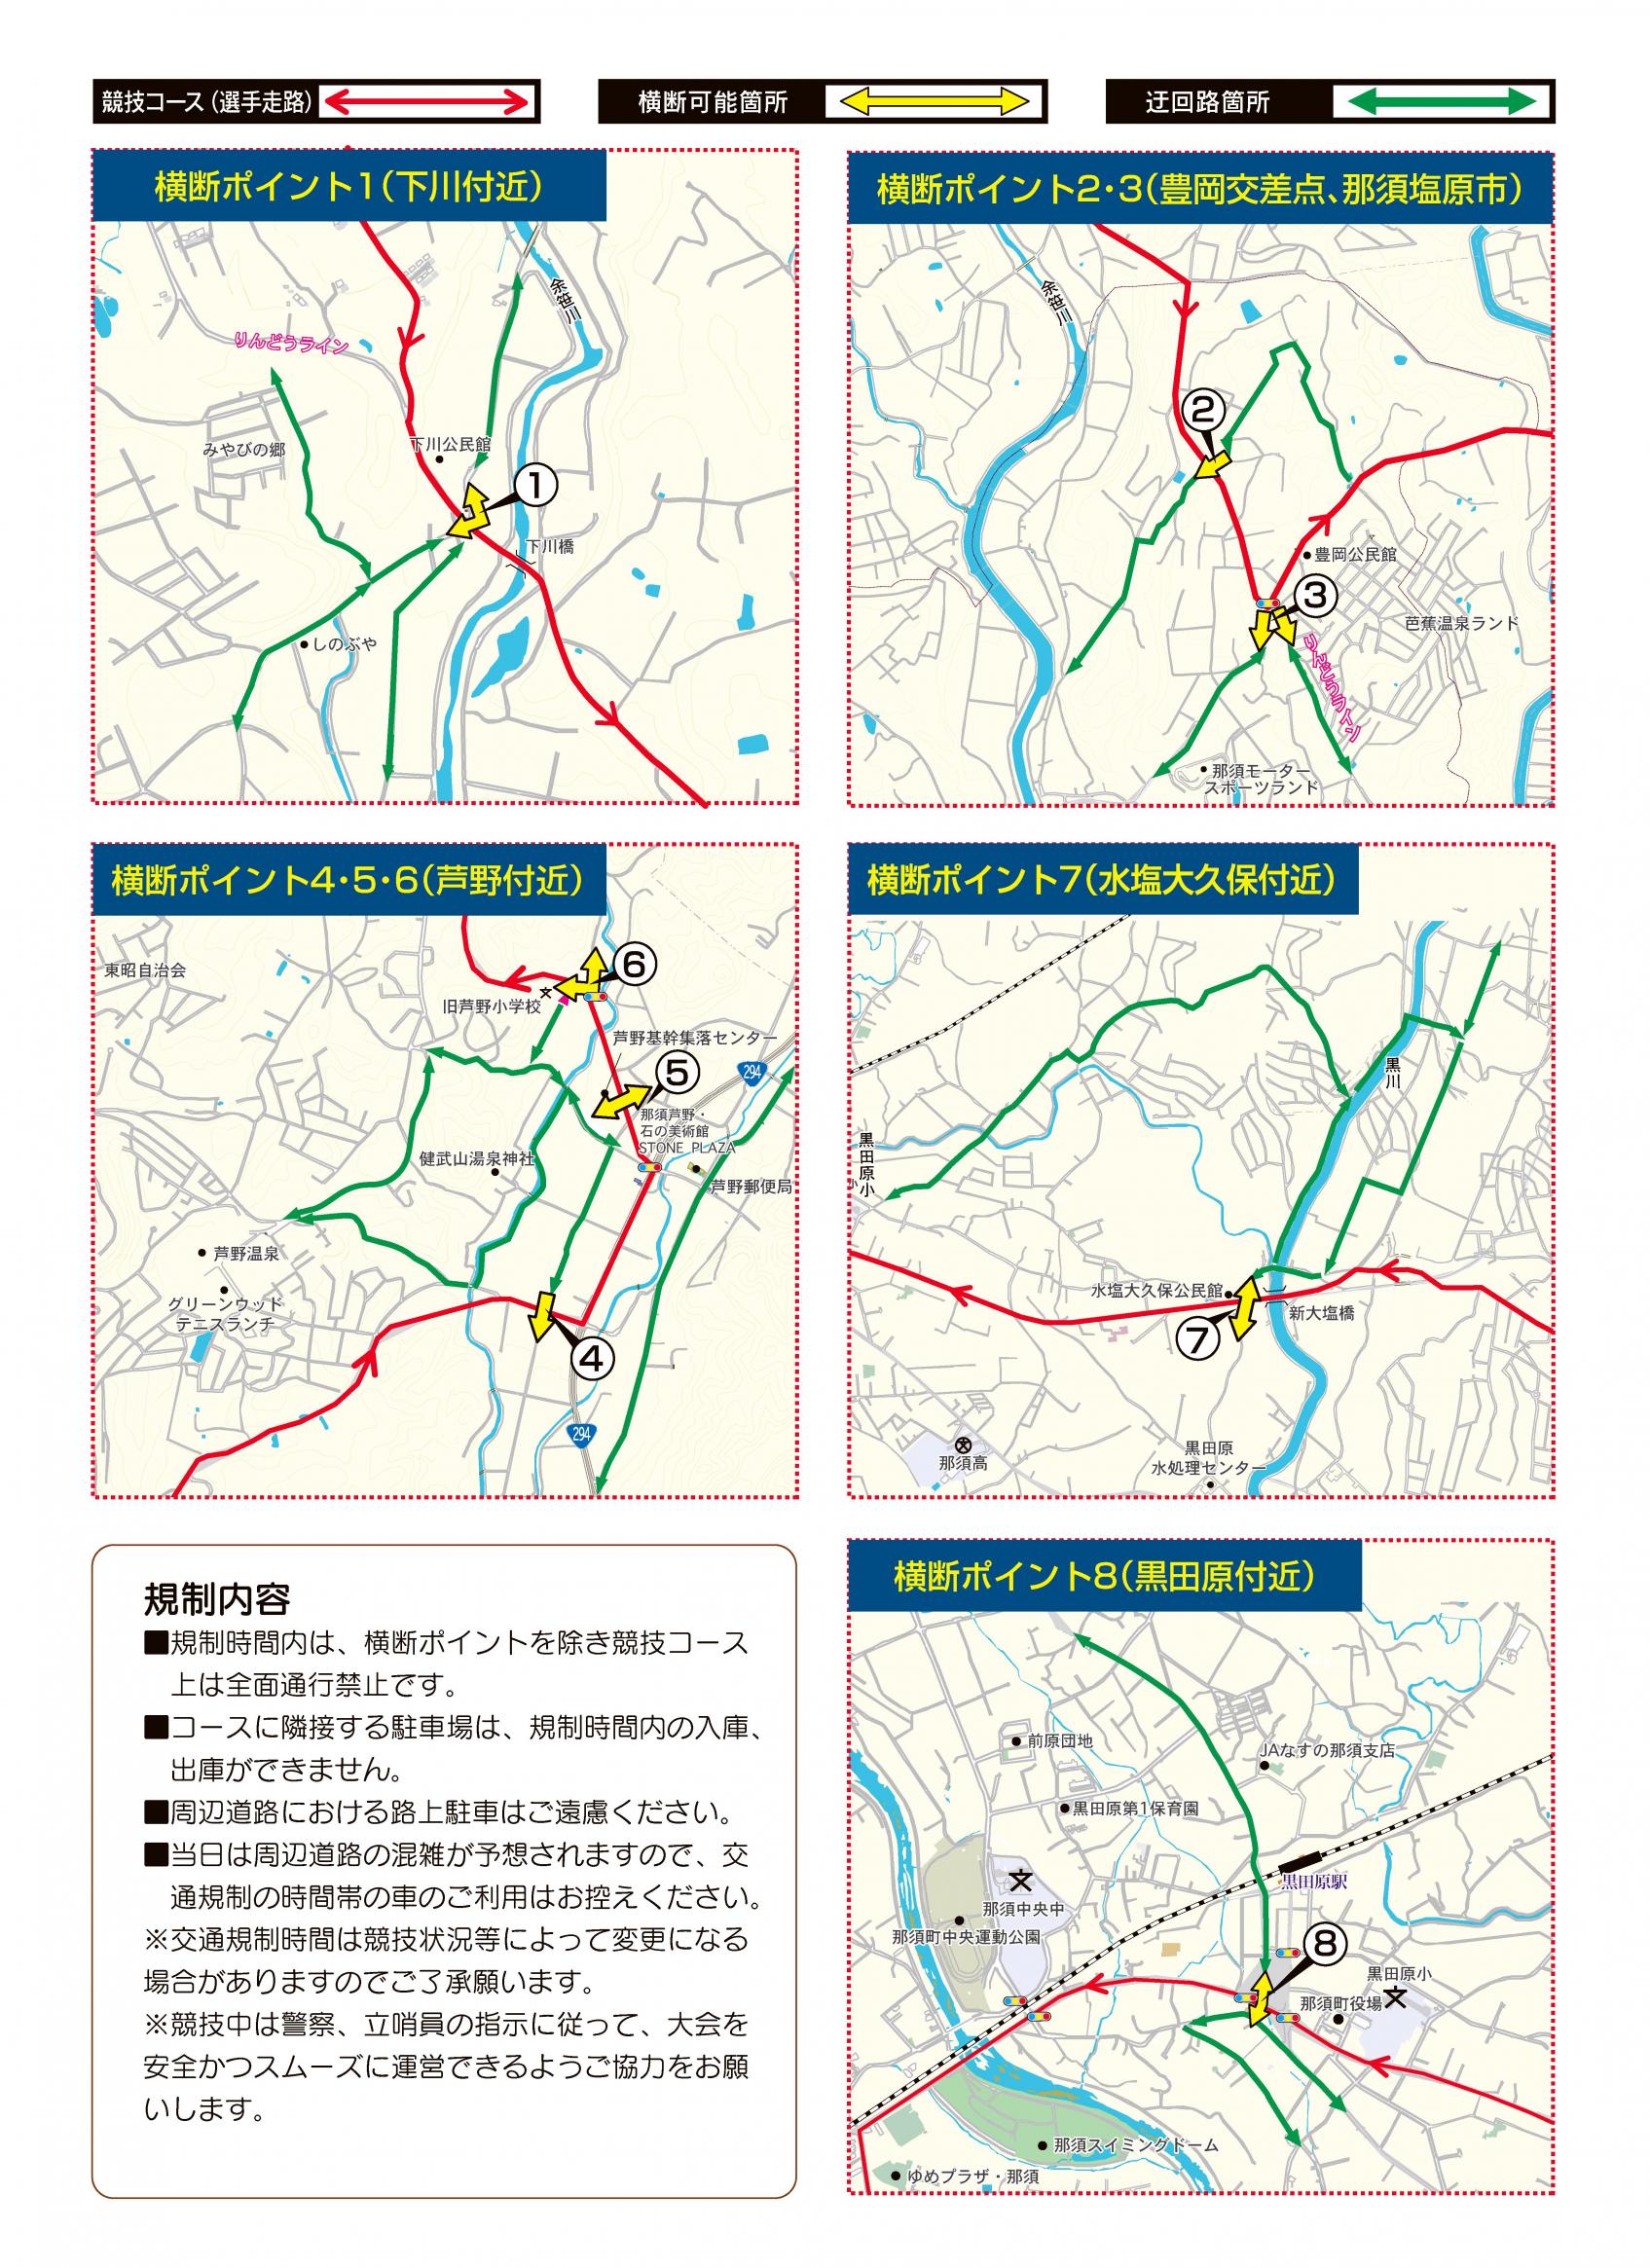 交通規制図(2)